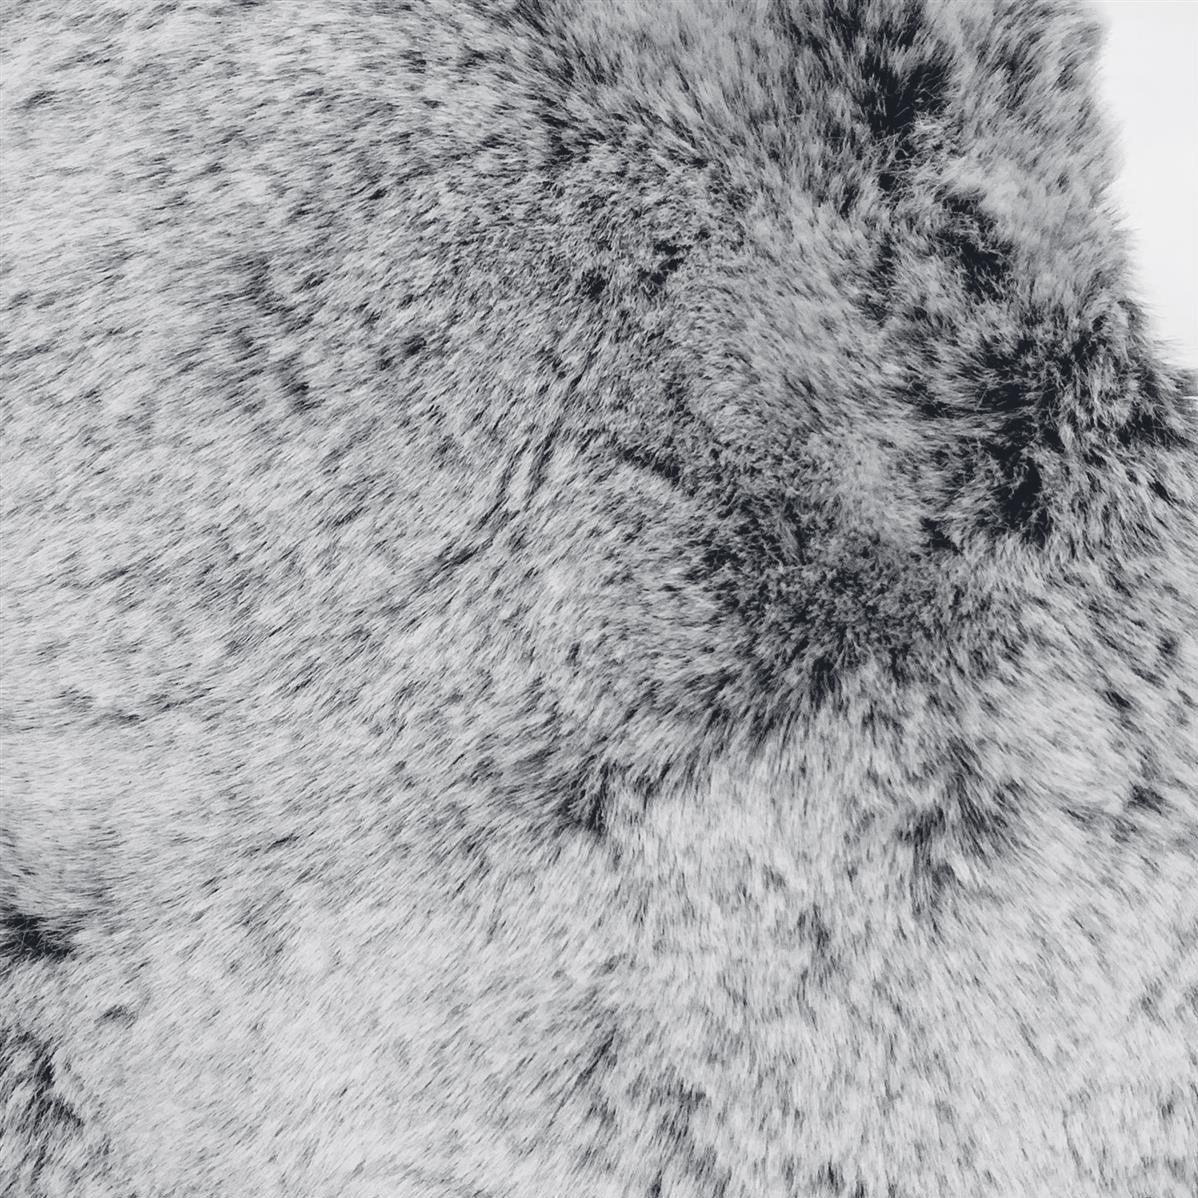 Eșarfă Răsucită din Blană Sintetică, 22 cm x 40 cm, Alb-Negru - Galeria de Bijuterii